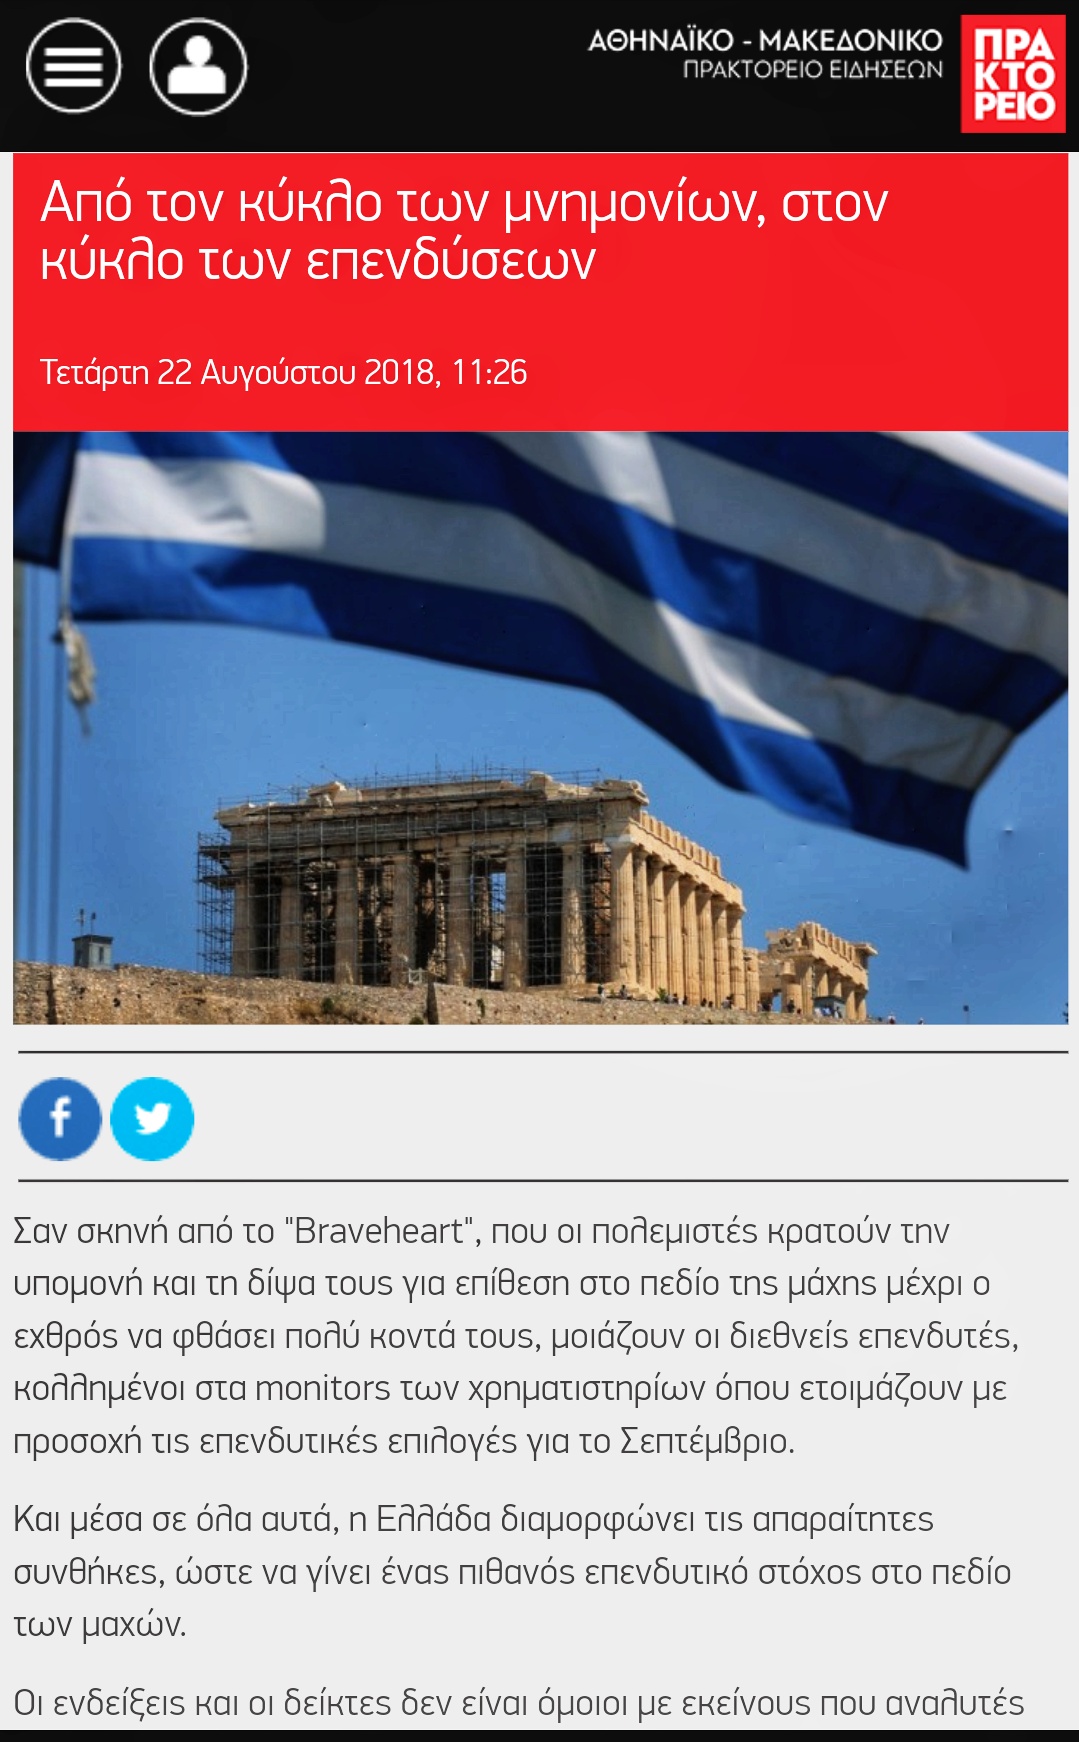 Το Αθηναϊκό Πρακτορείο Ειδήσεων μπήκε στη “μετατρόλ” εποχή.  Το κείμενο με τίτλο: “Από τον κύκλο των μνημονίων, στον κύκλο των επενδύσεων” το αποδεικνύει